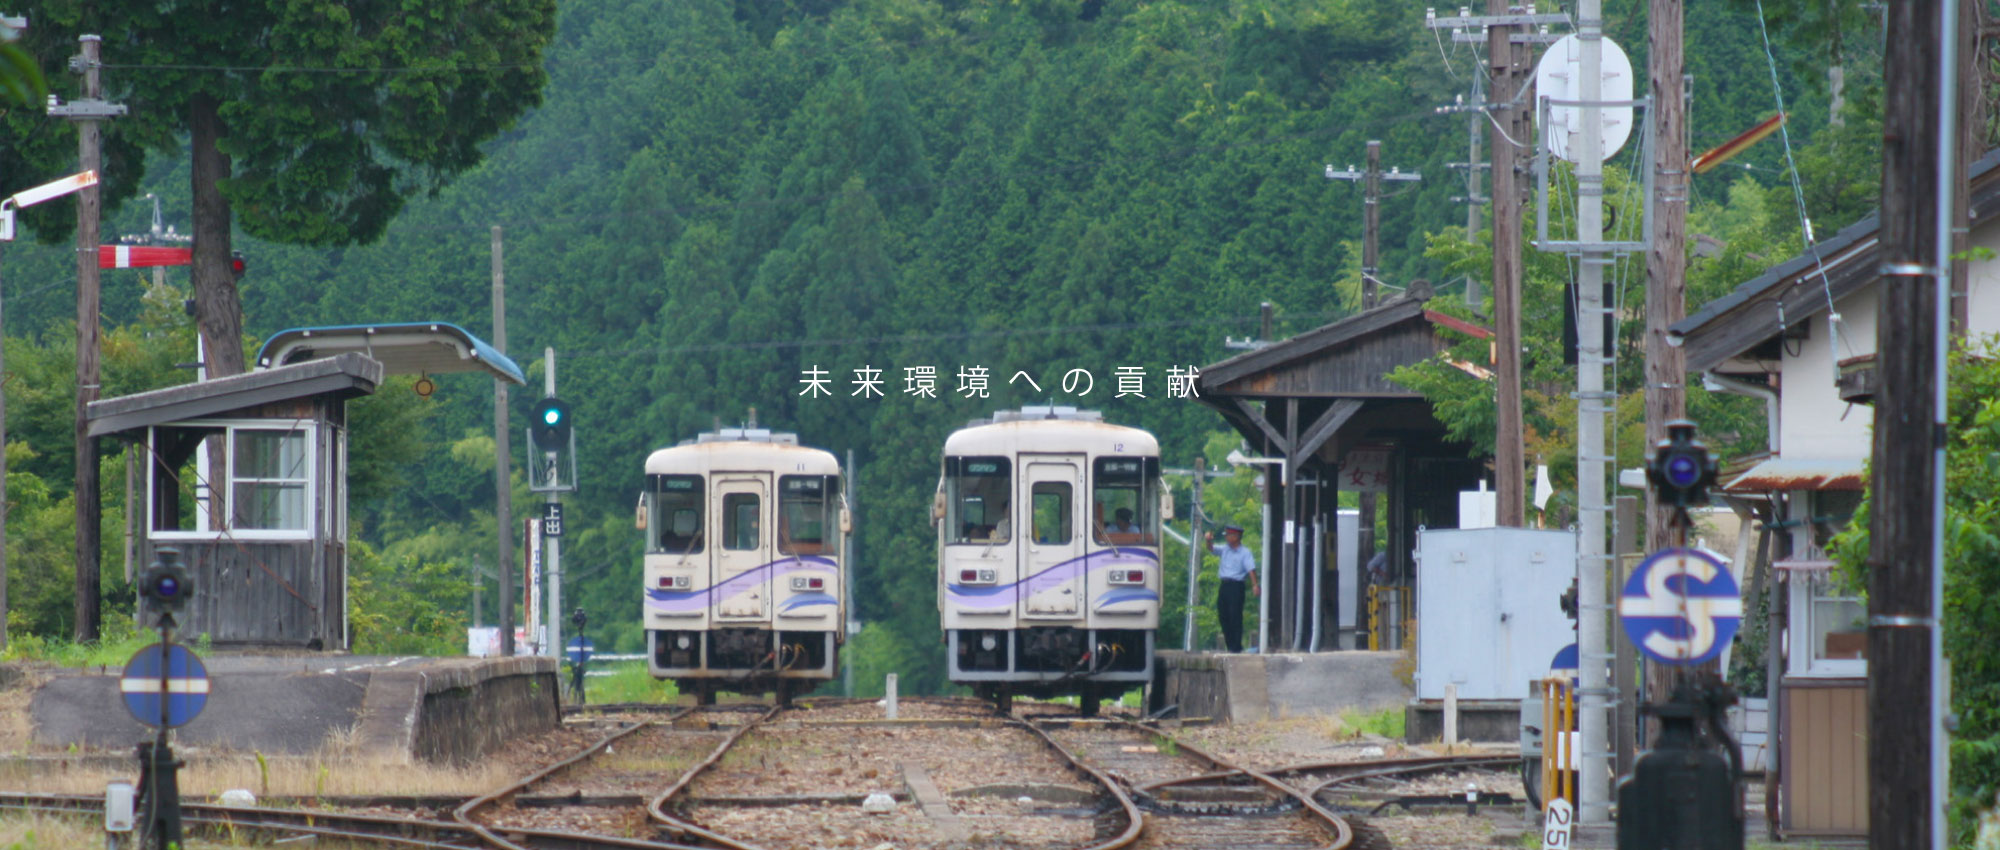 明知鉄道 岩村駅